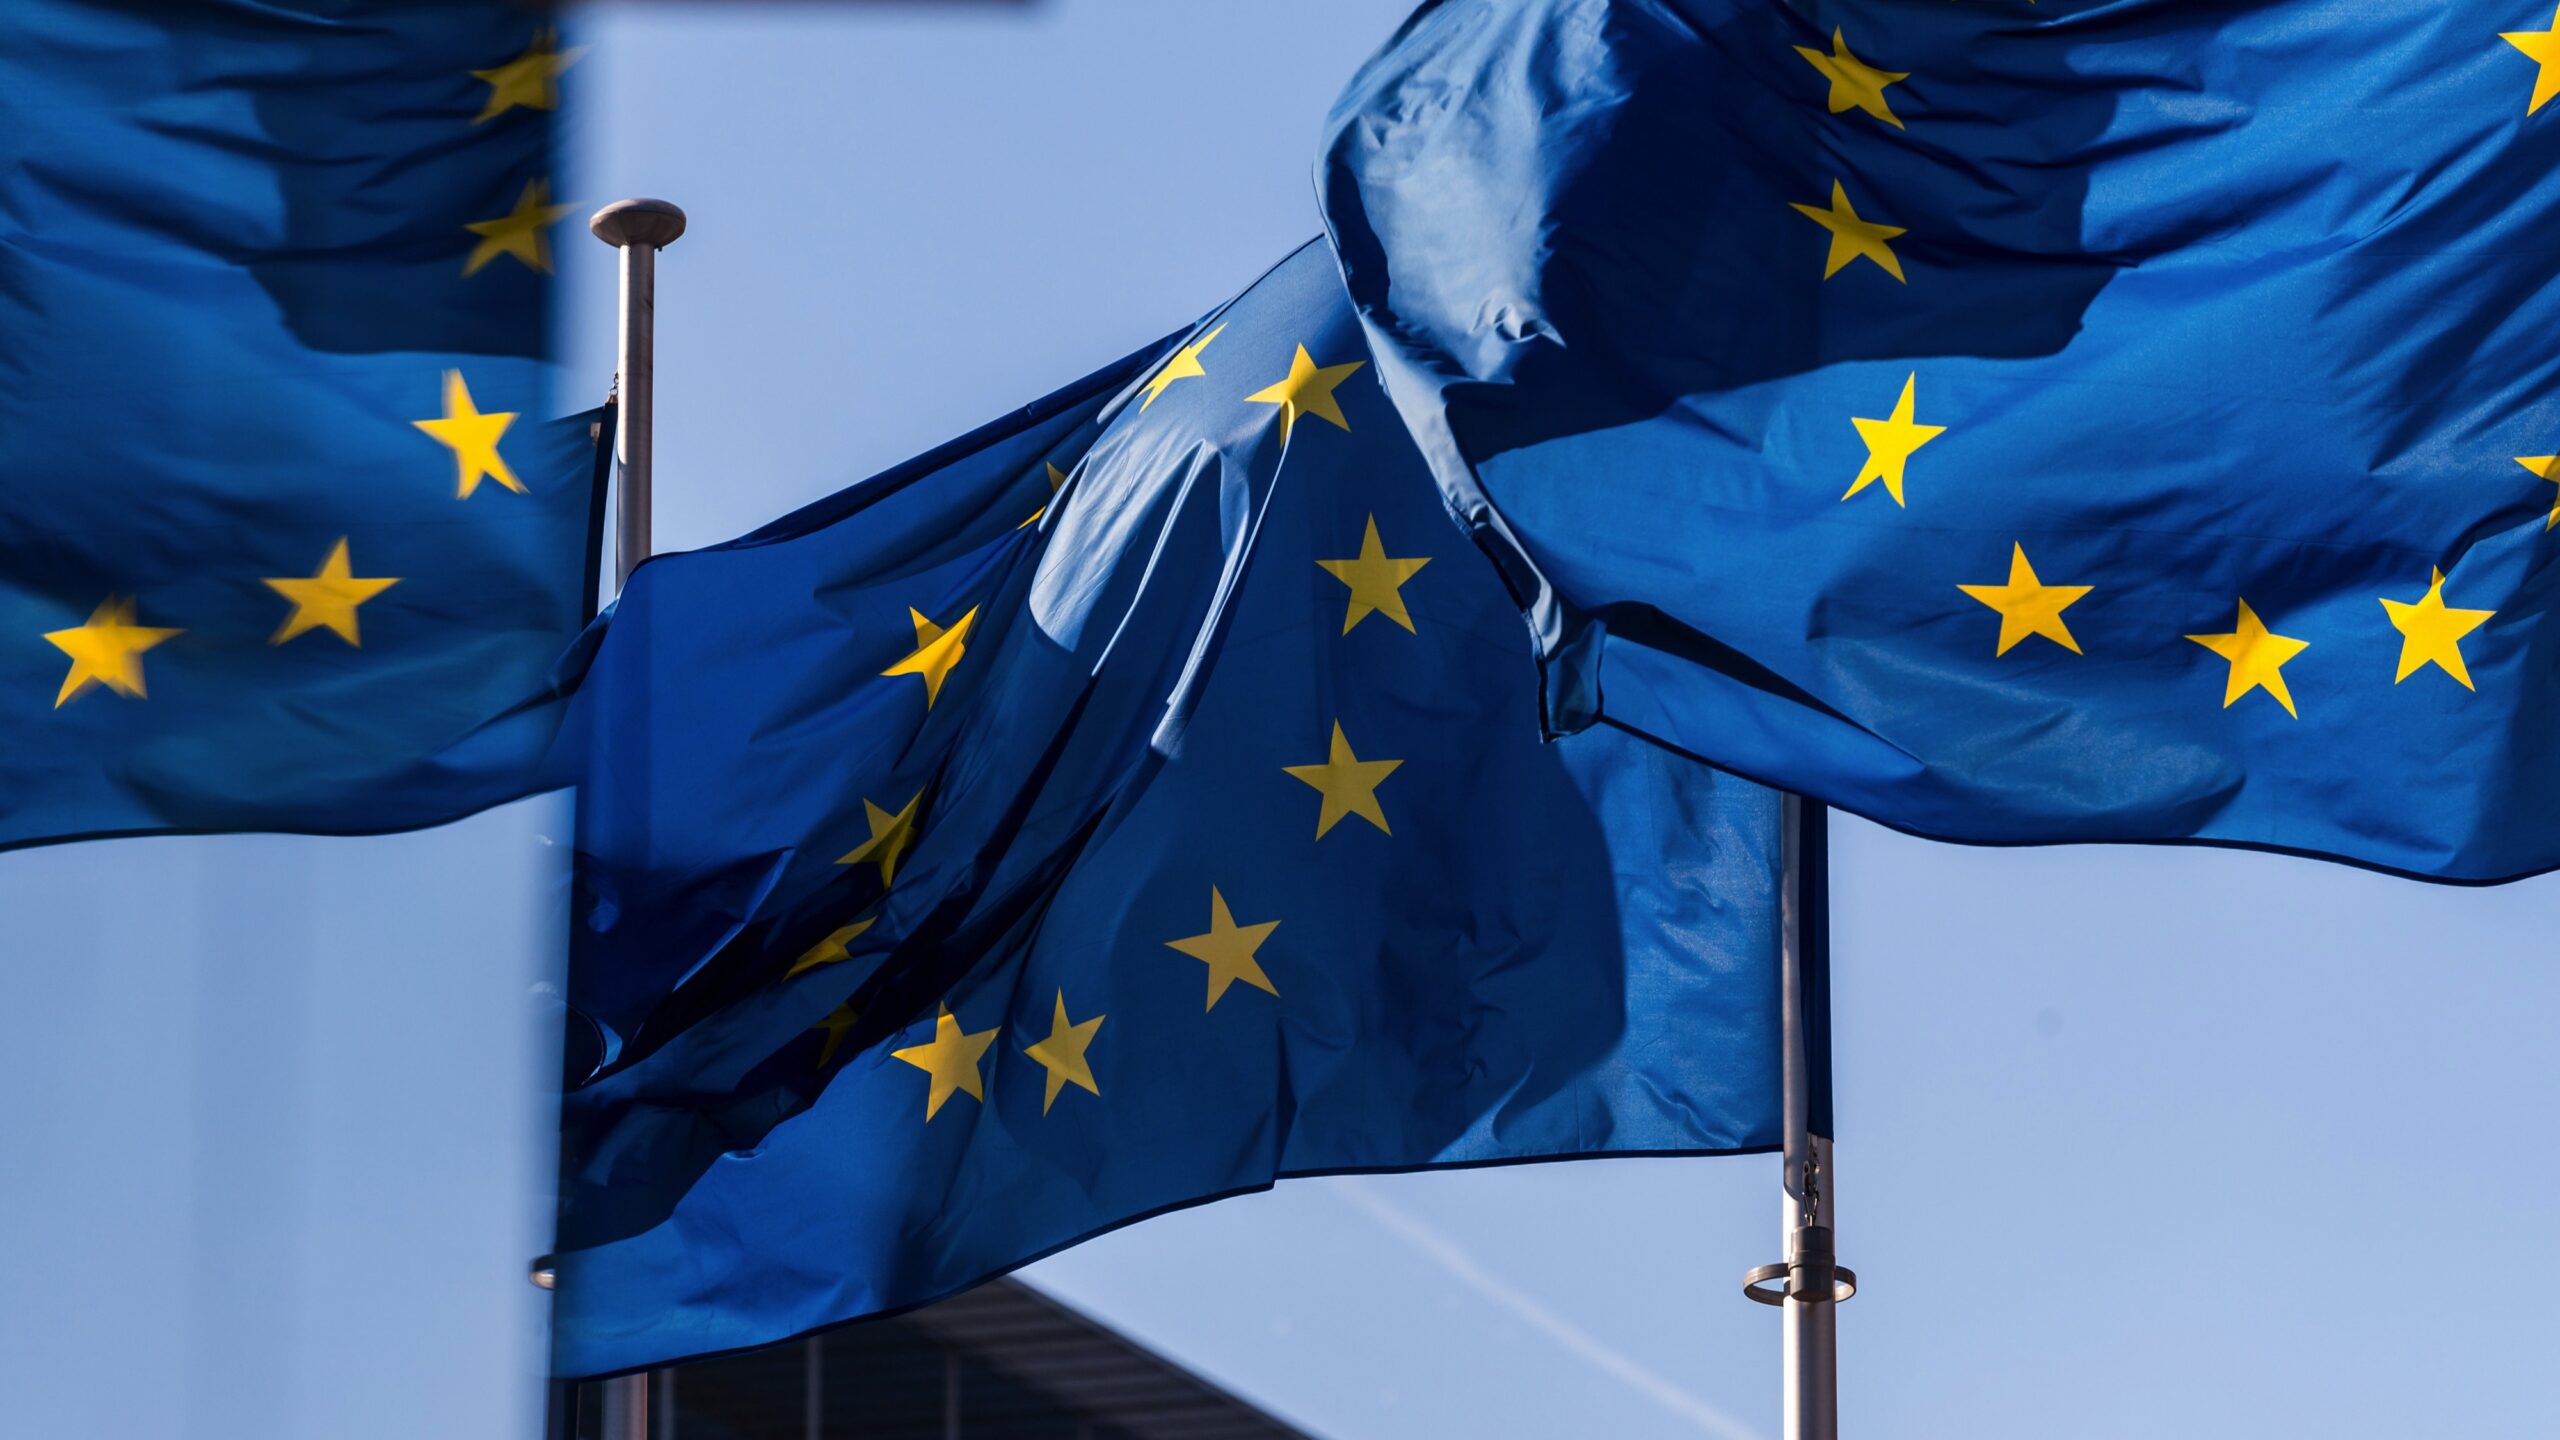 Sunlight falls across European Union flags in Brussels